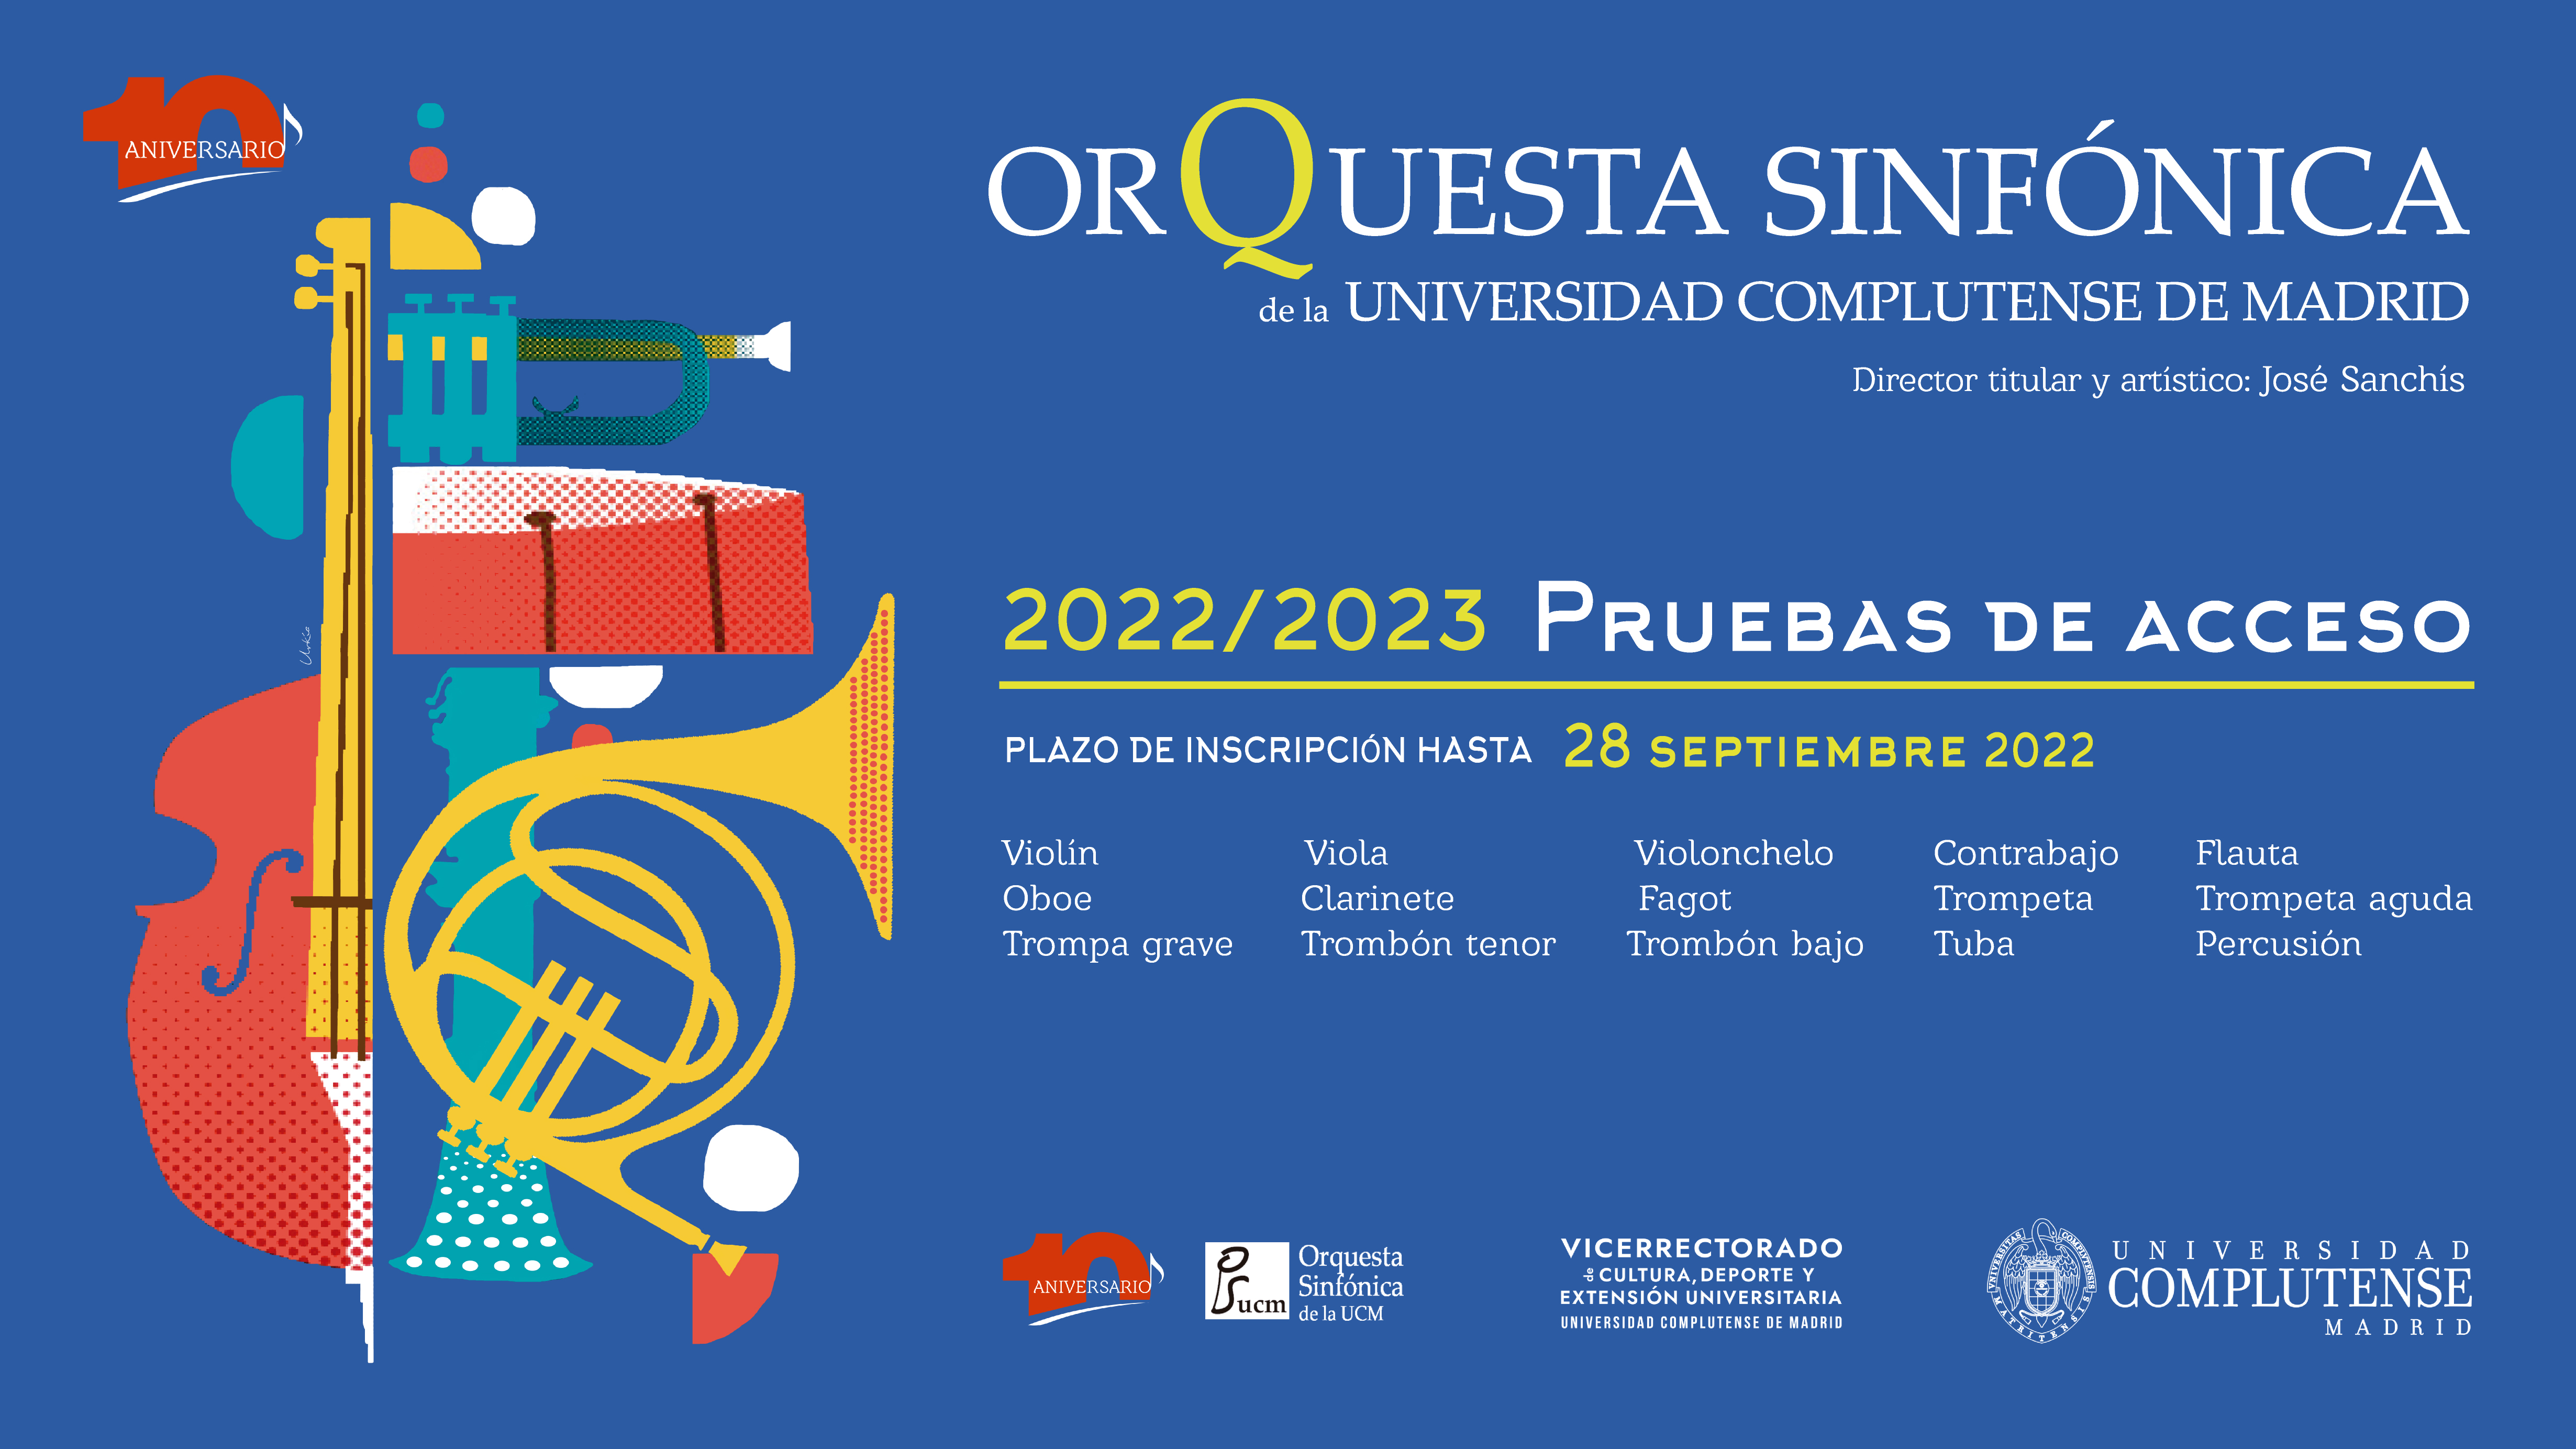 Pruebas de acceso a la Orquesta Sinfónica de la Universidad Complutense de Madrid